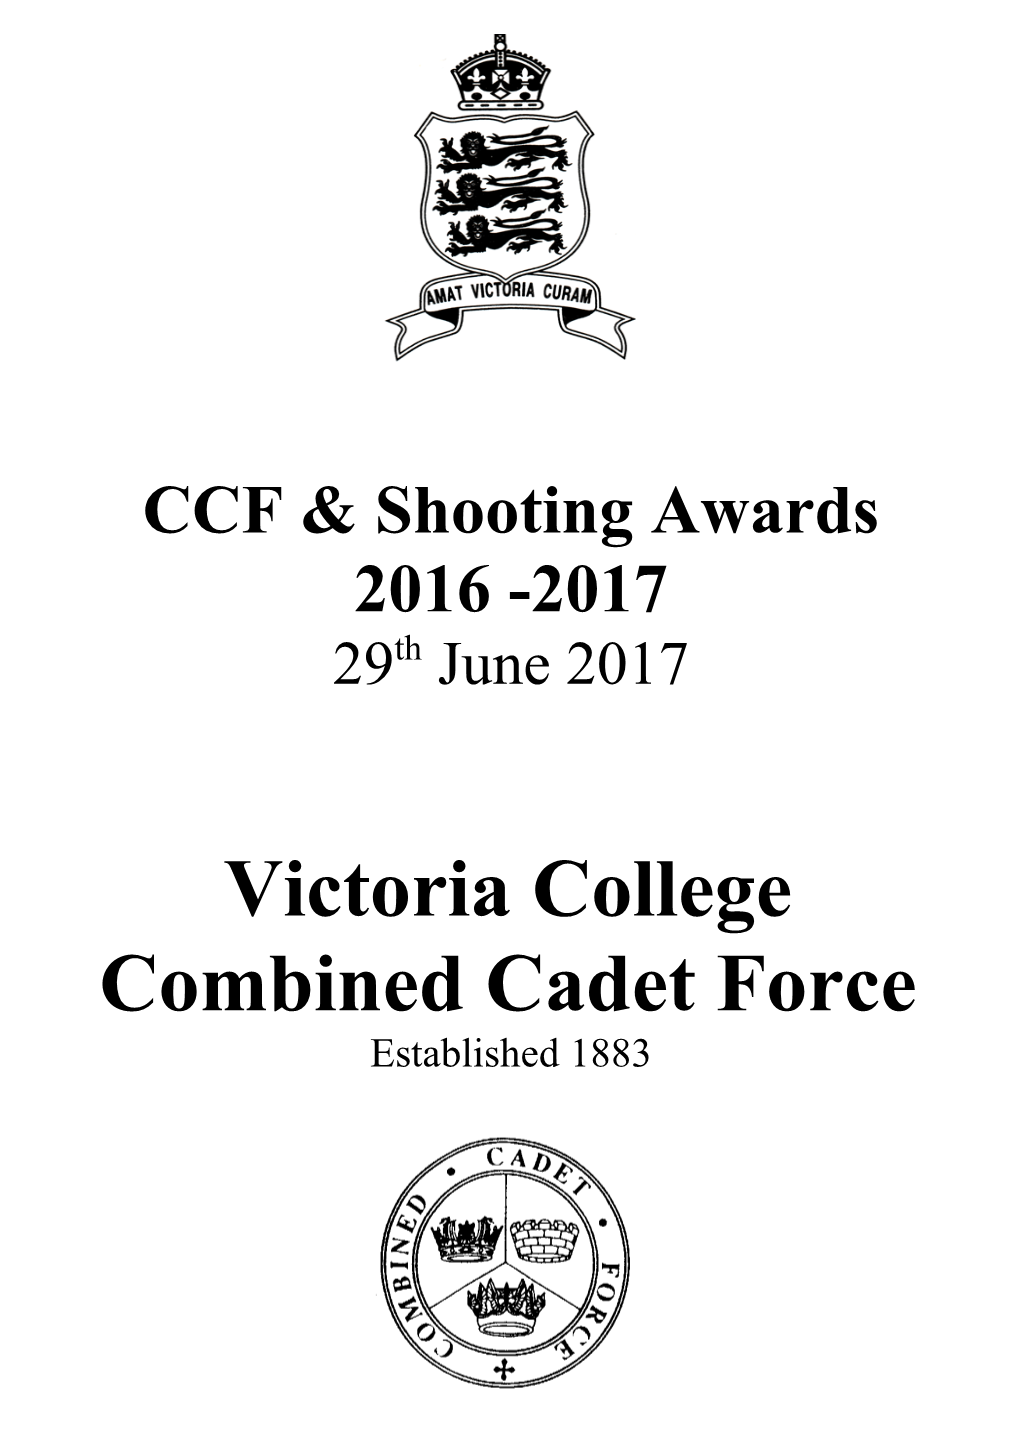 CCF & Shooting Awards